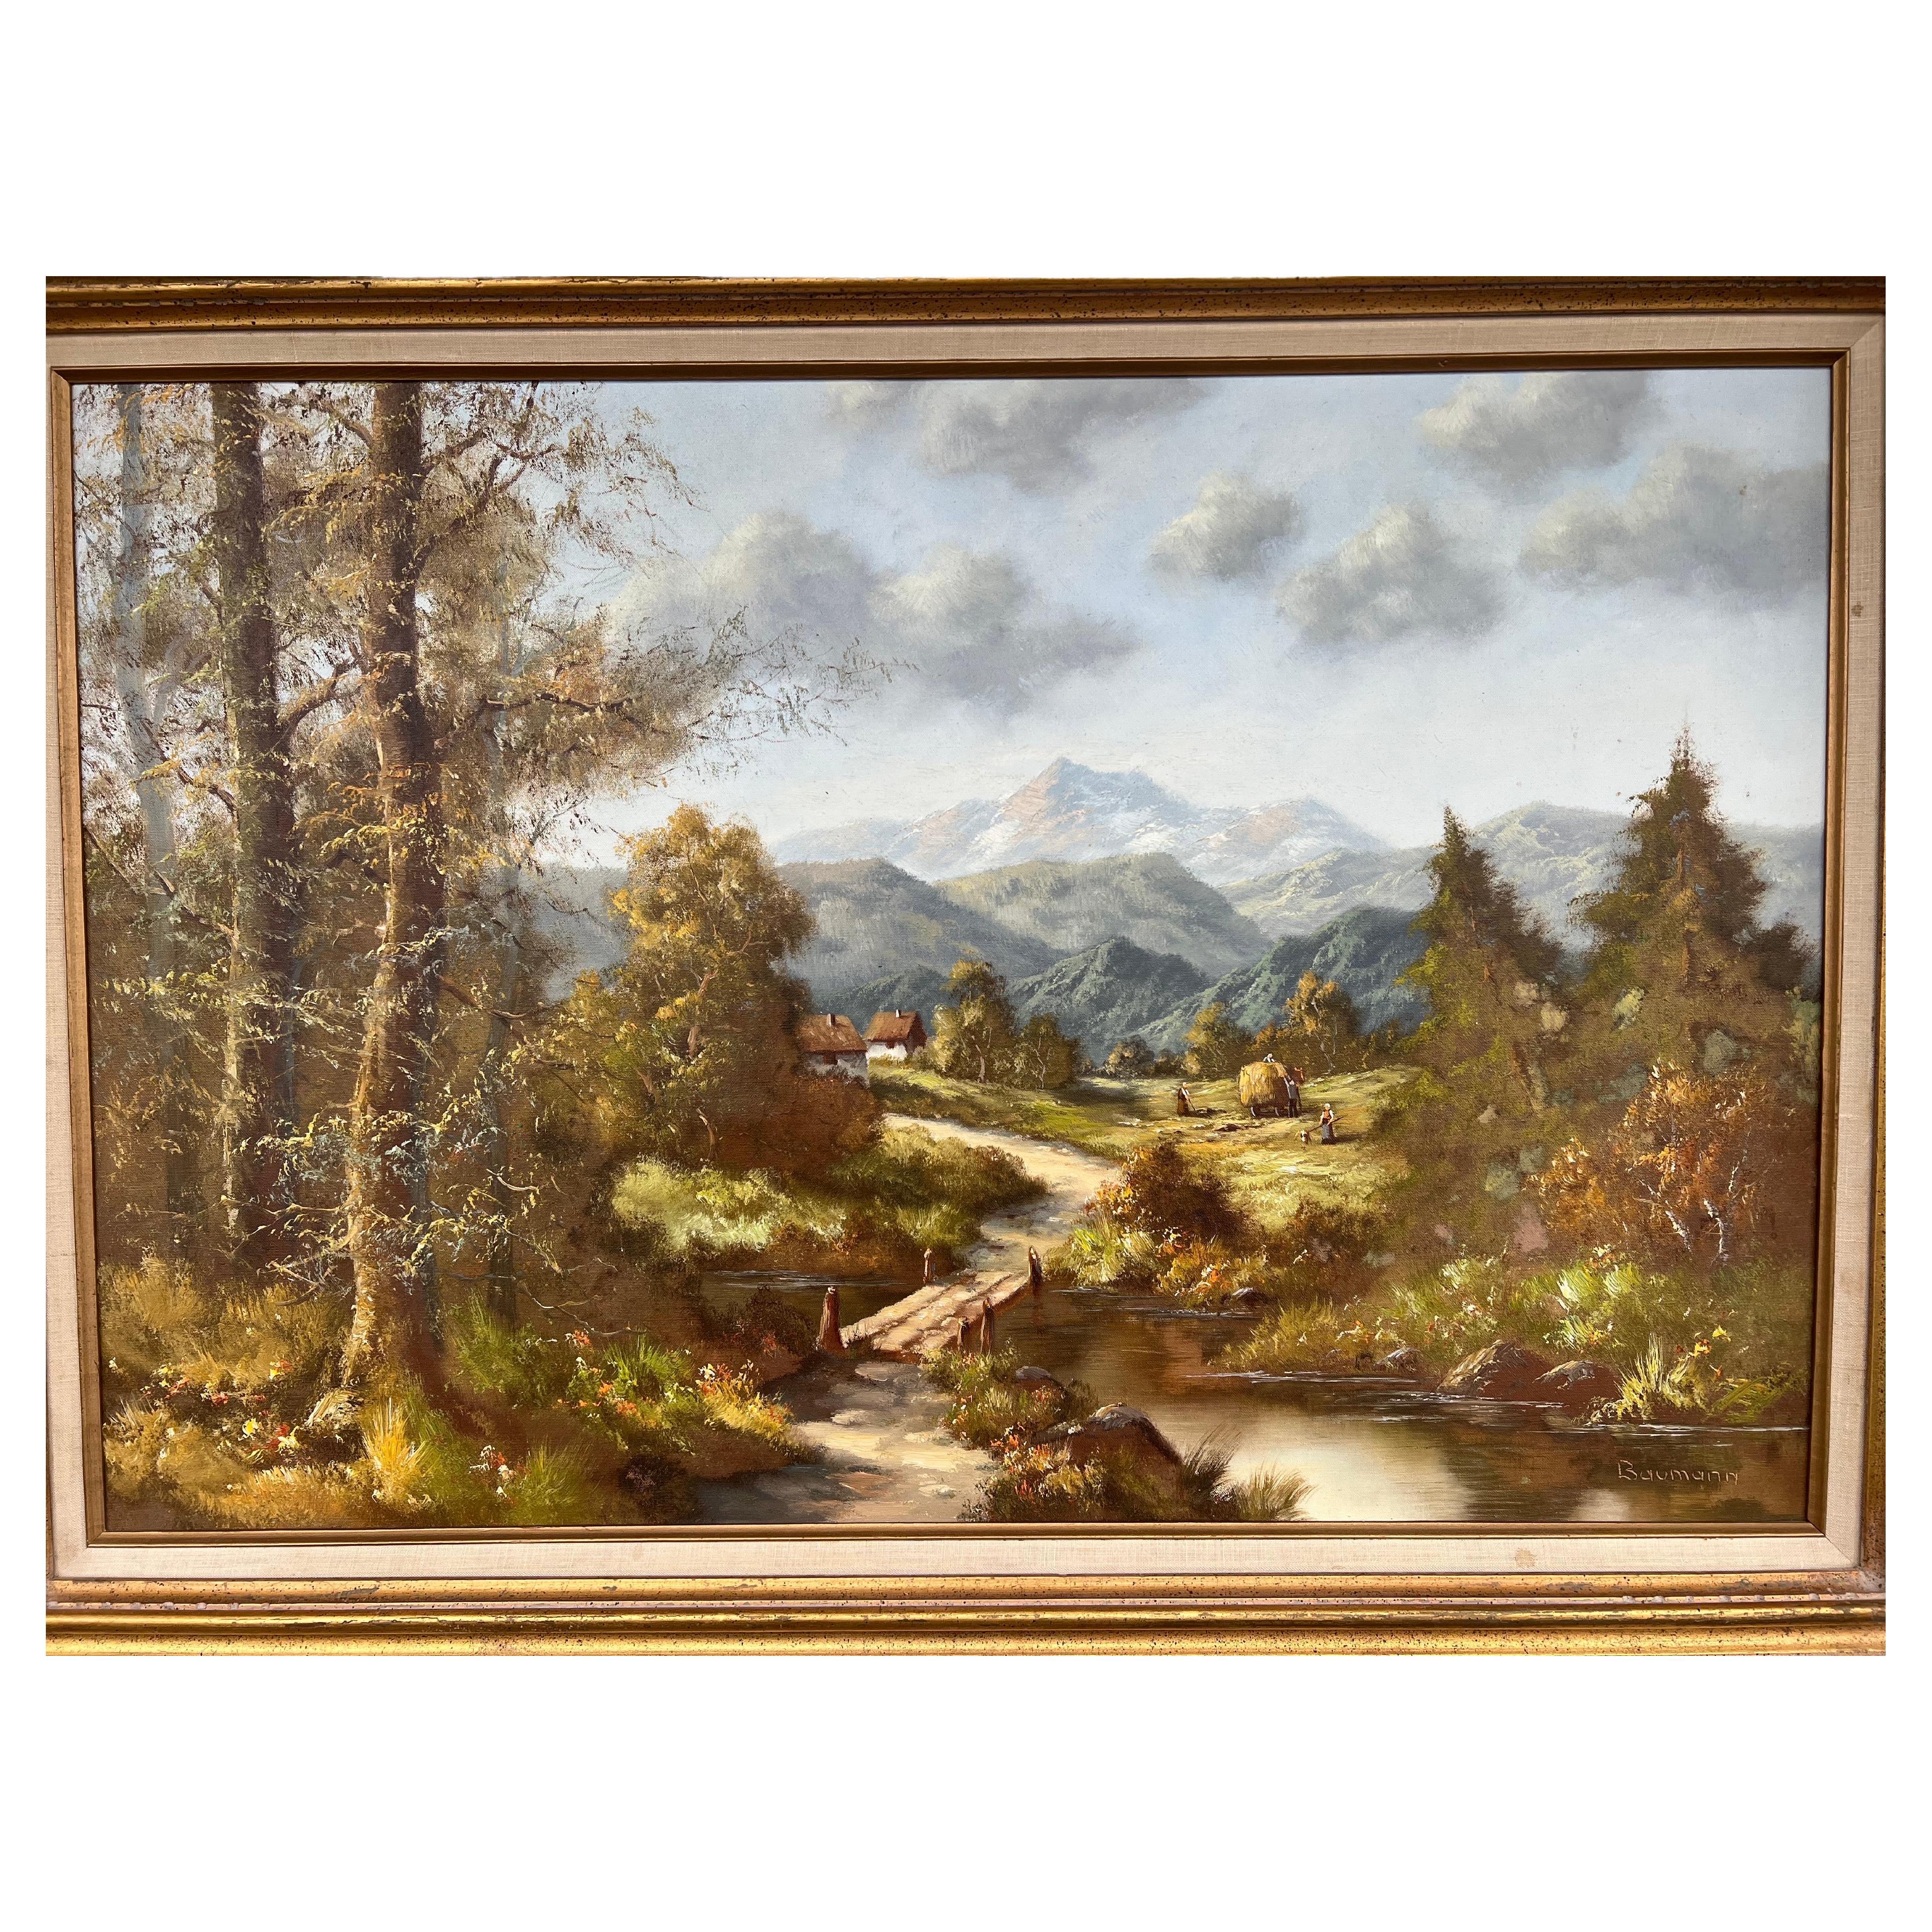 Huile sur toile originale encadrée de l'artiste Lothar Baumann, paysage européen, Lothar Baumann est né en Bavière et a étudié les arts à Munich, en Allemagne. Ses dernières œuvres expriment son amour pour les paysages bavarois de sa jeunesse. Le